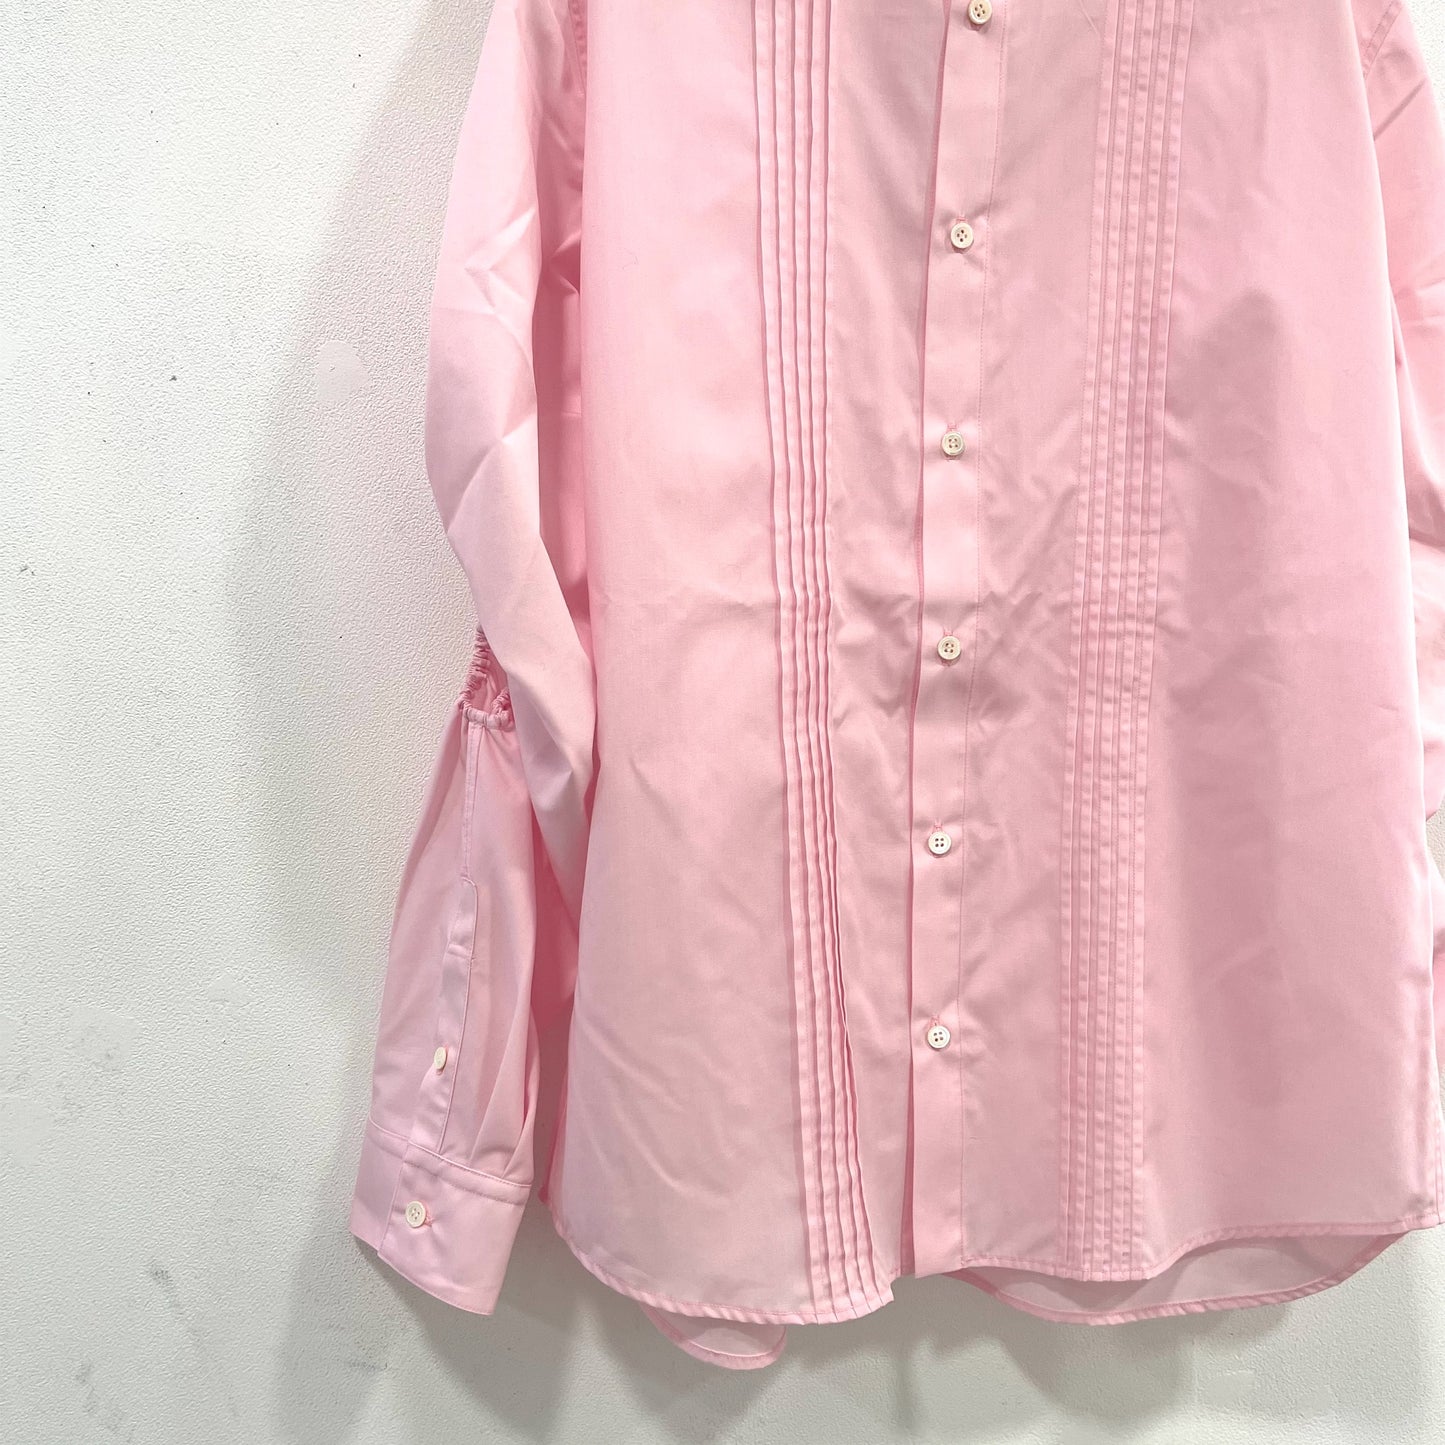 EG pin tucked Shirts / Pink / ピンタック丸襟シャツ